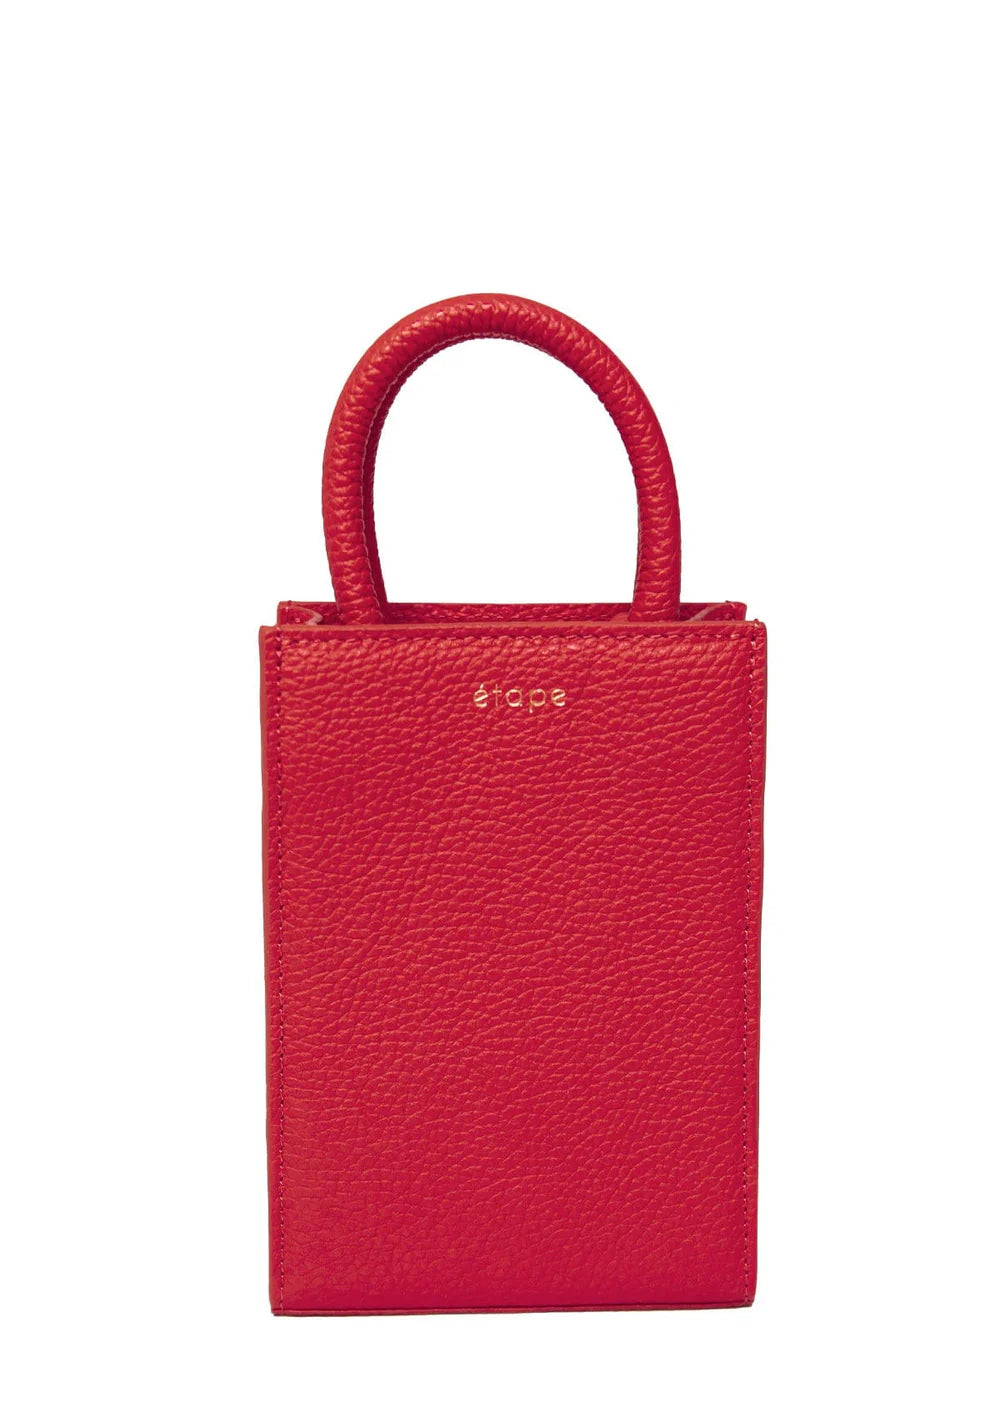 Жіноча сумочка Etape Mini, червоний, (Etape), Міні сумки червоний